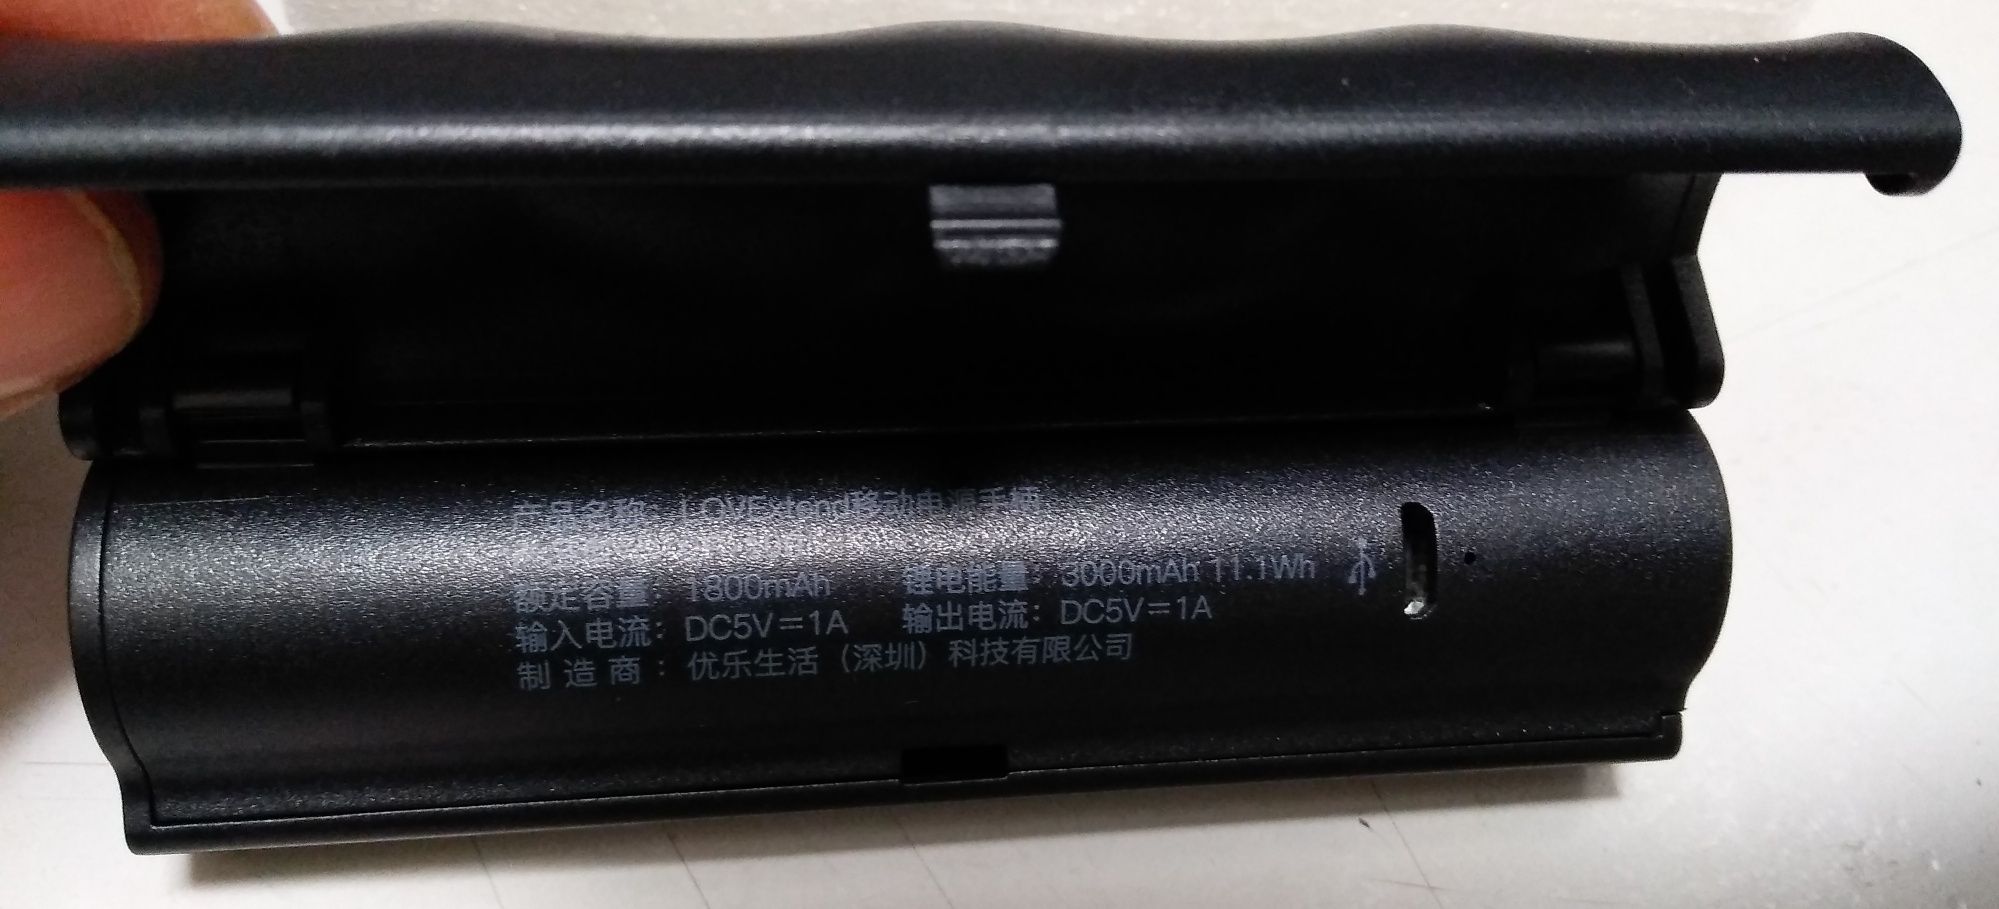 ліхтарик Xiaomi Lovextend LP-100,3 в 1-му+Power Bank(Новий,гарантія)